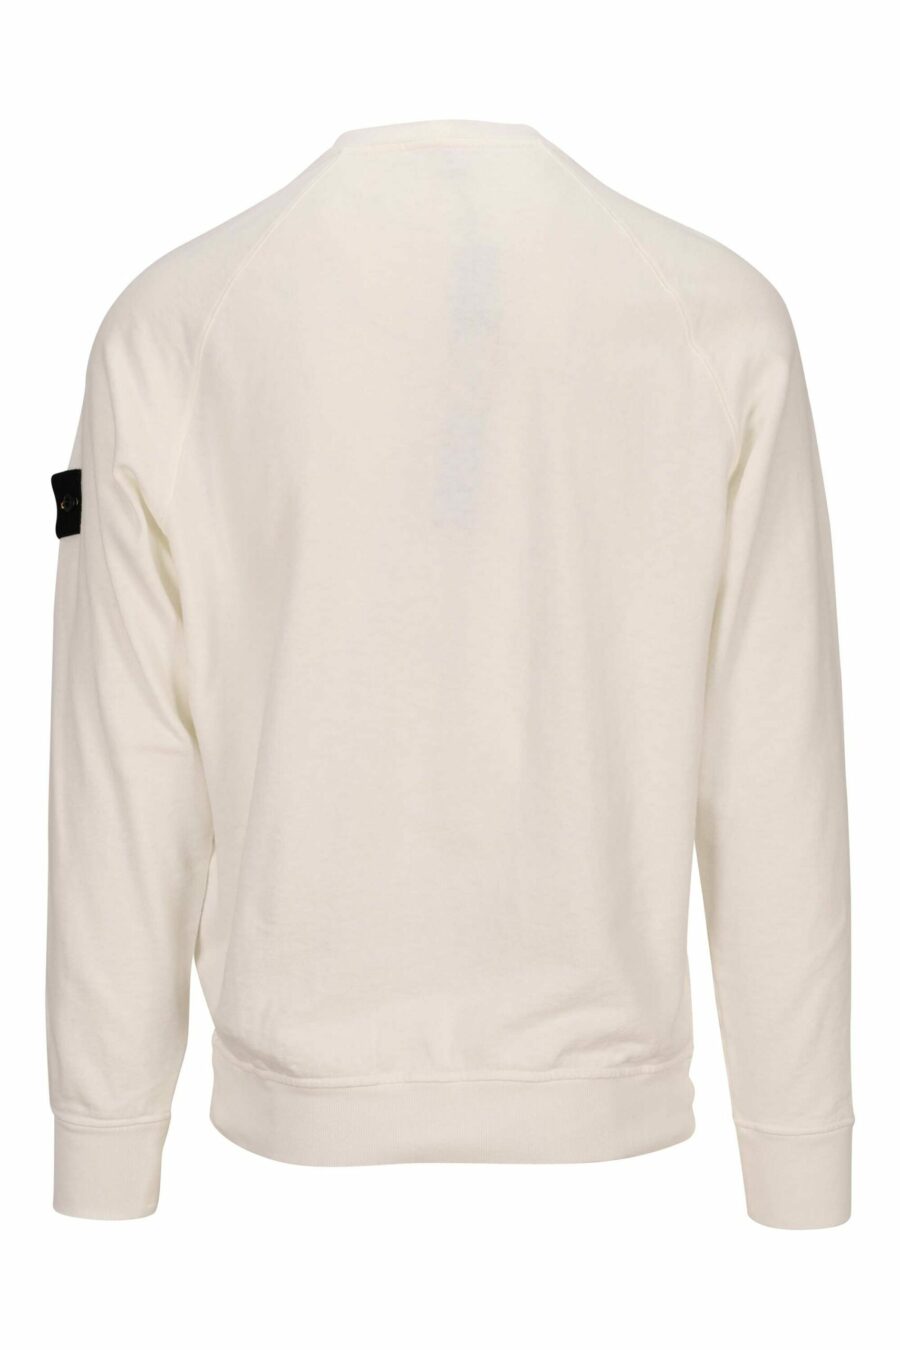 Weißes Sweatshirt mit Logo-Kompass-Aufnäher - 8052572901874 2 skaliert